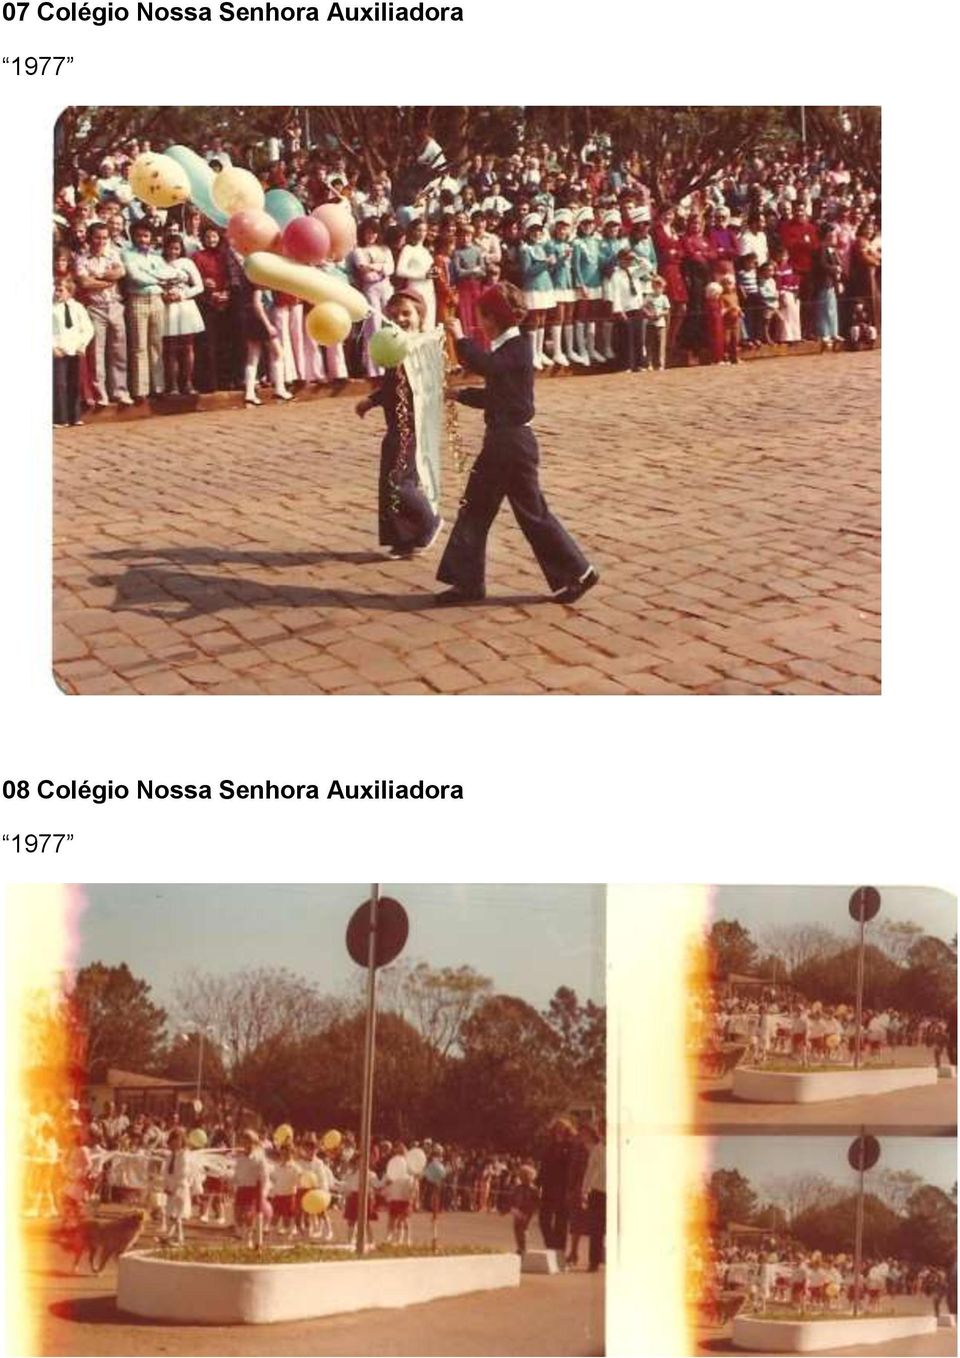 1977 08 Colégio